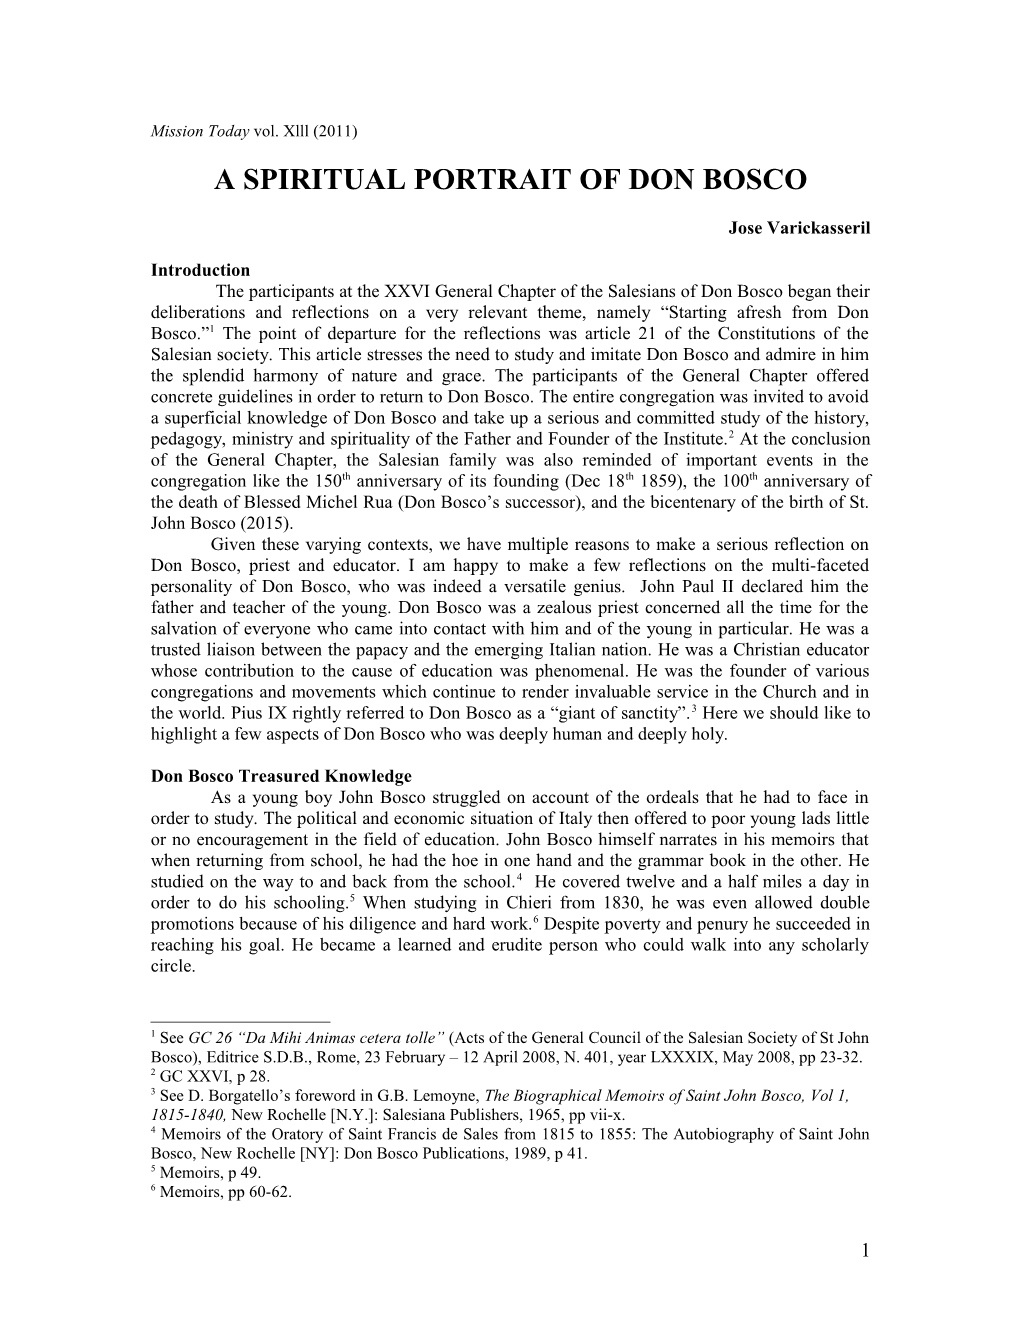 A Spiritual Portrait of Don Bosco